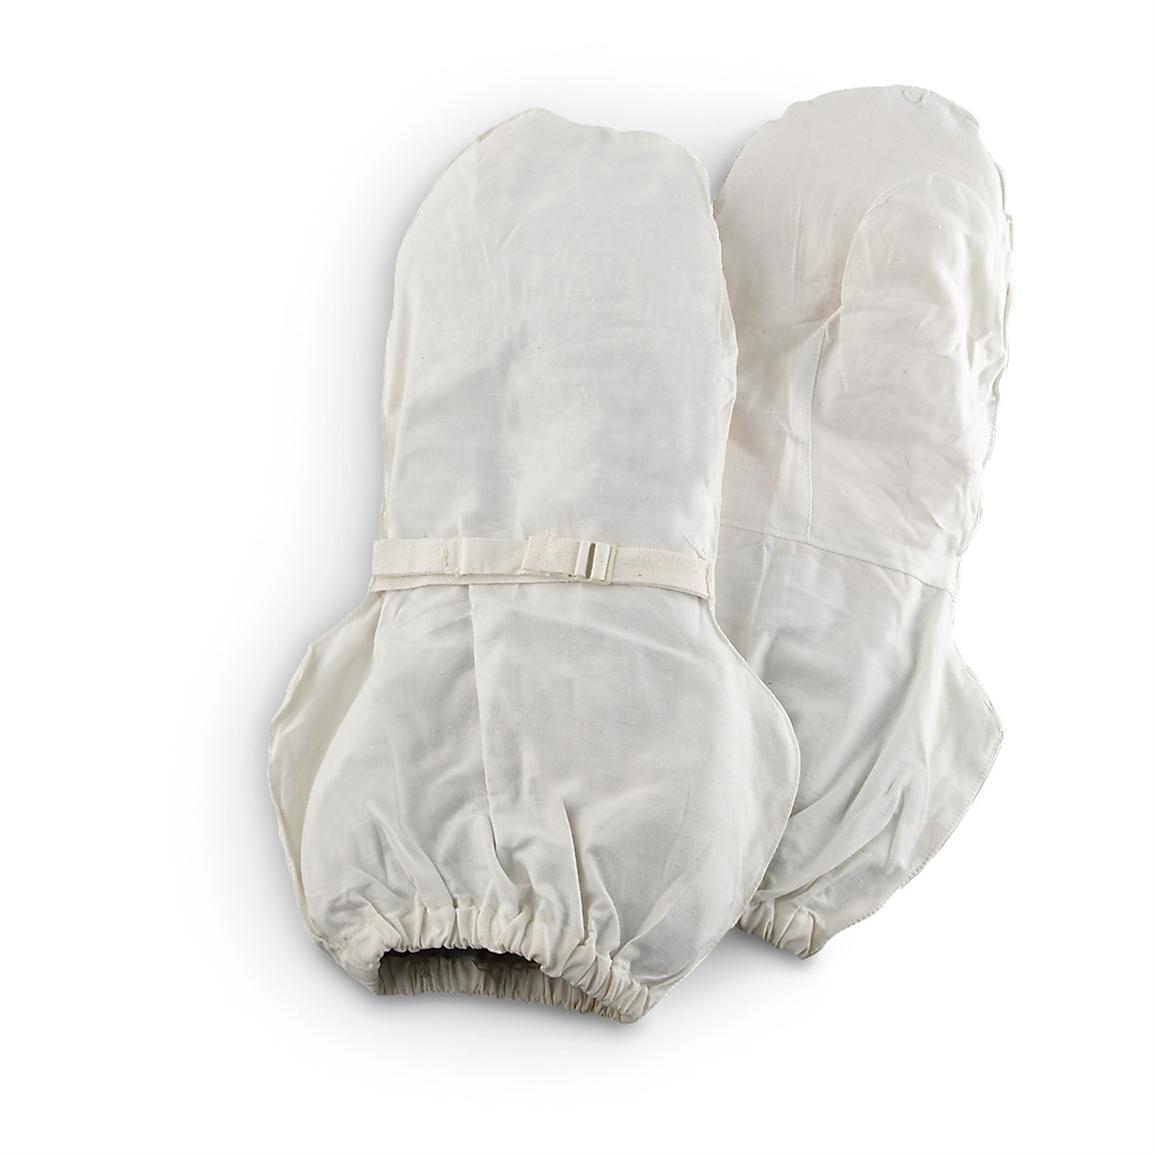 U.S. Military Mitten Covers, White